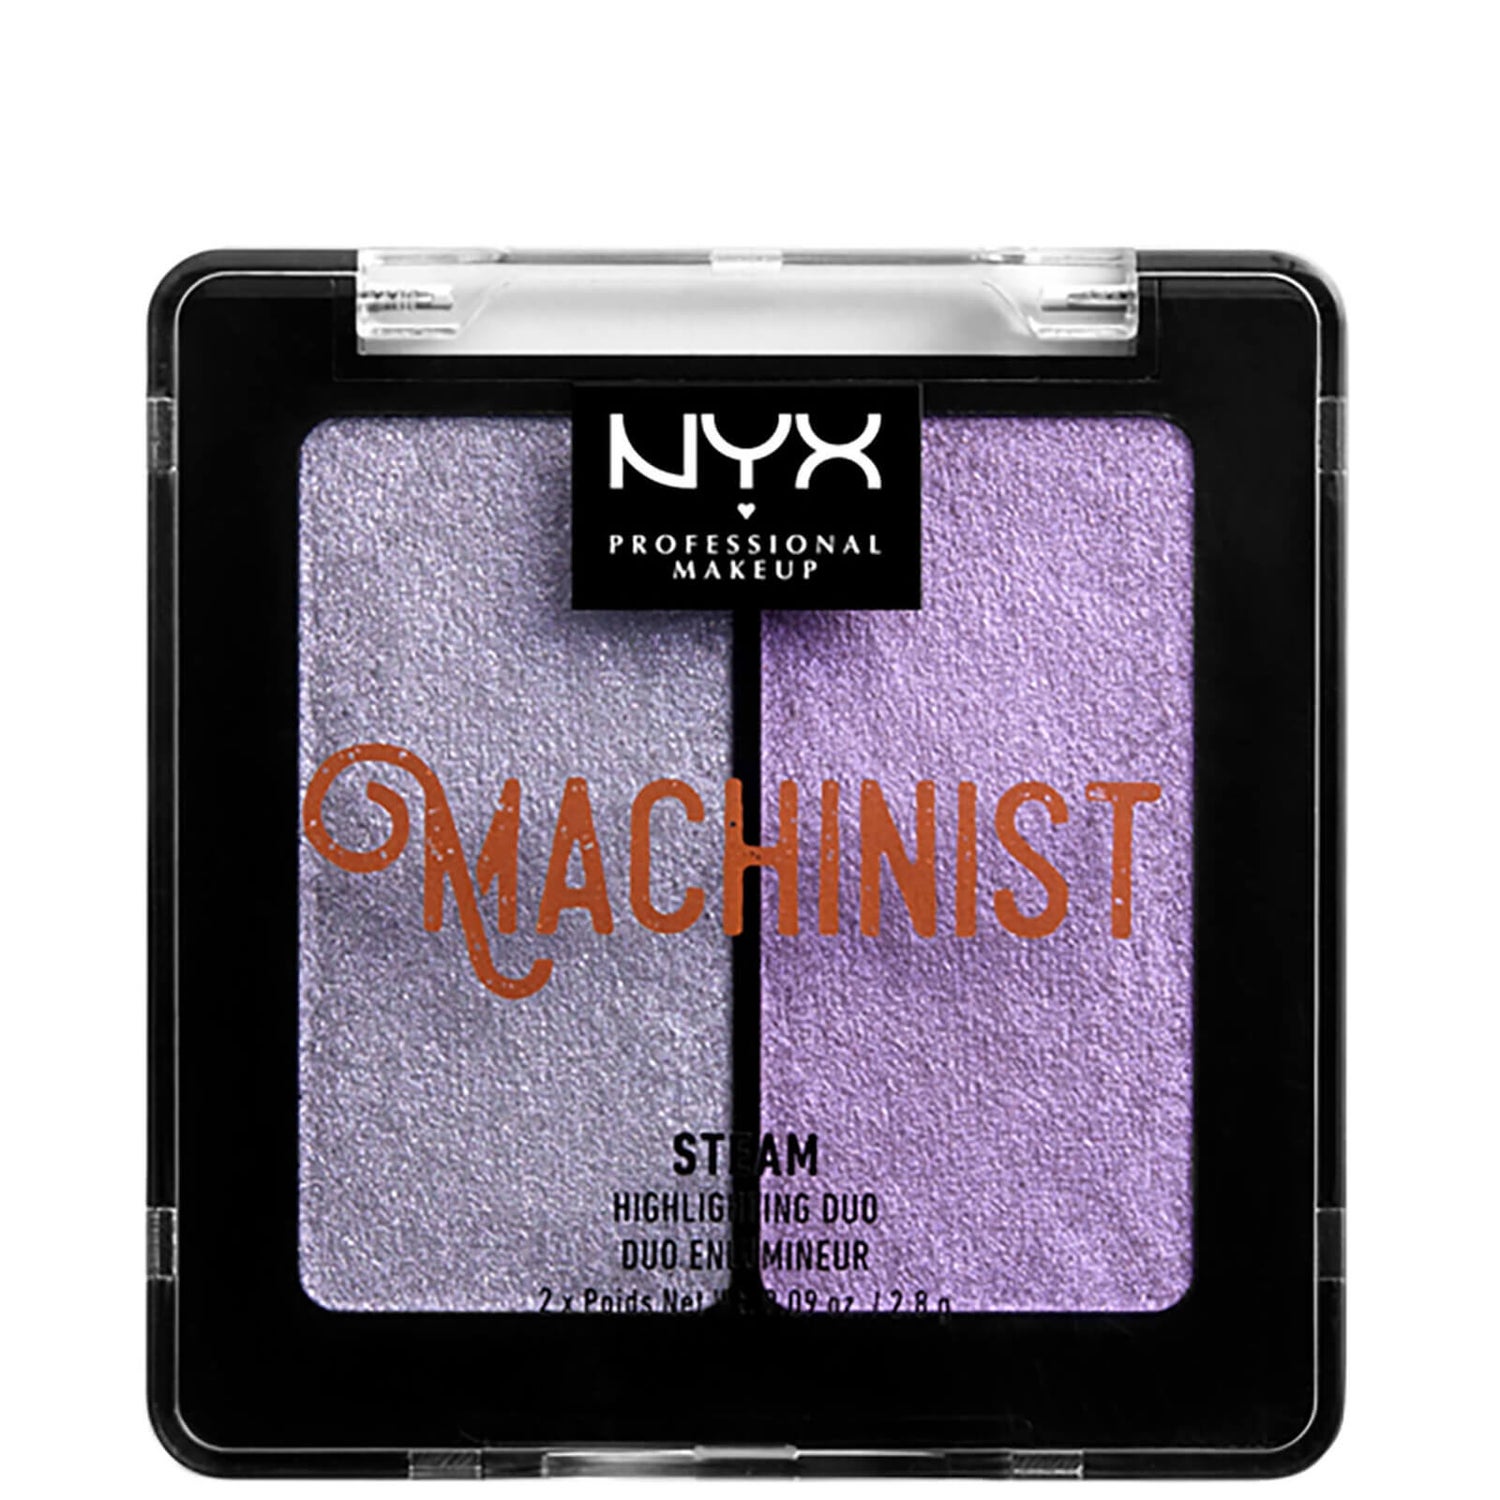 NYX 机械大师系列双色高光粉 | 豆沙灰 & 豆沙紫